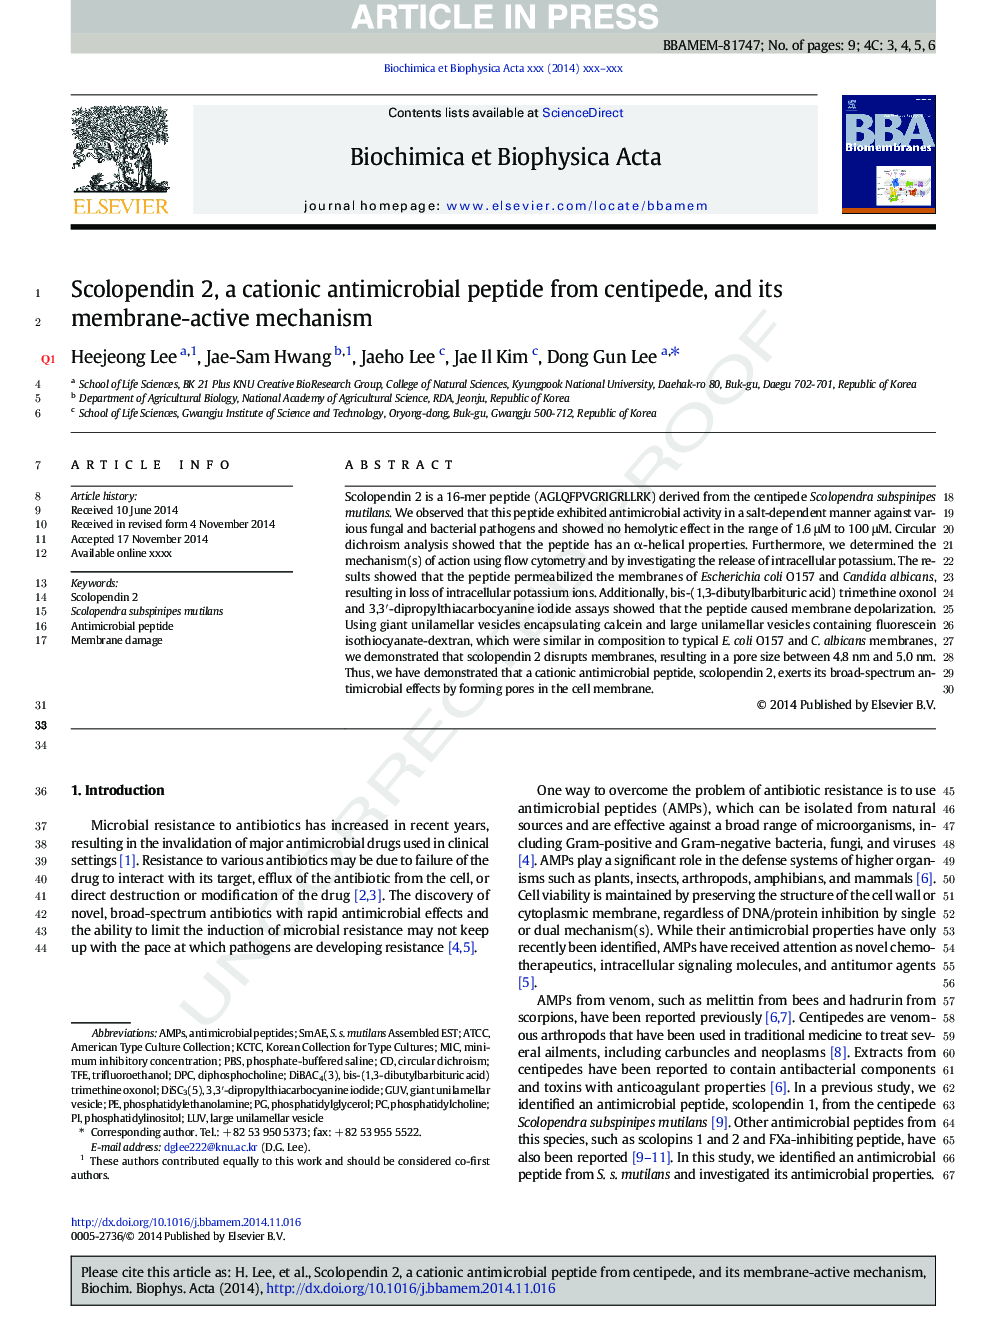 اسکوالپندین 2، یک پپتید ضد میکروبی کاتیونی از سانتیمد و مکانیسم غشای آن 